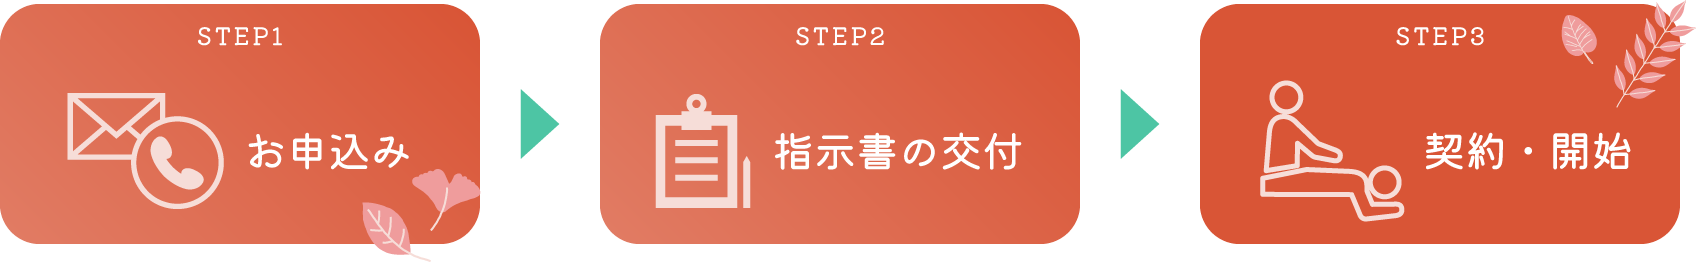 Step1お申込み、Step2指示書の交付、Step3契約・開始